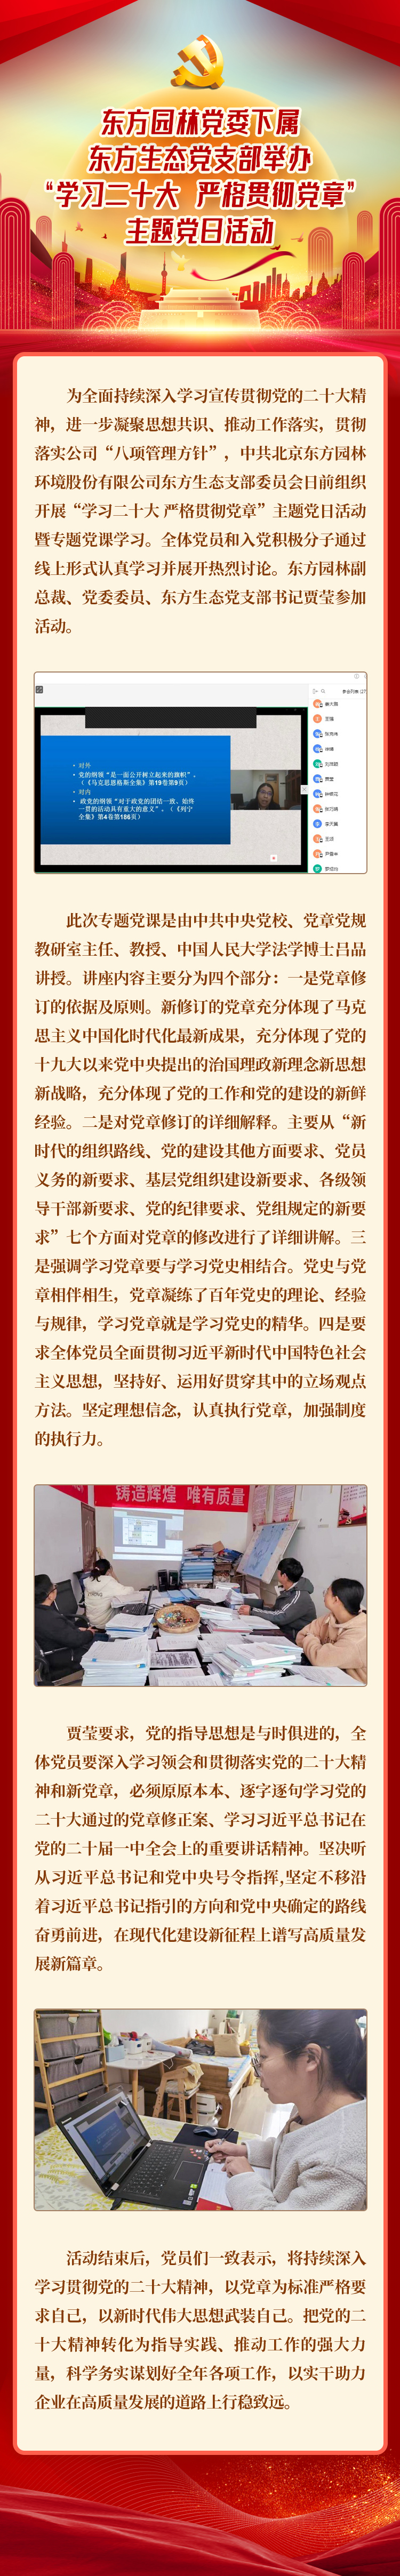 官网0112东方生态党支部主题党日党课学习活动-长图 2.jpg